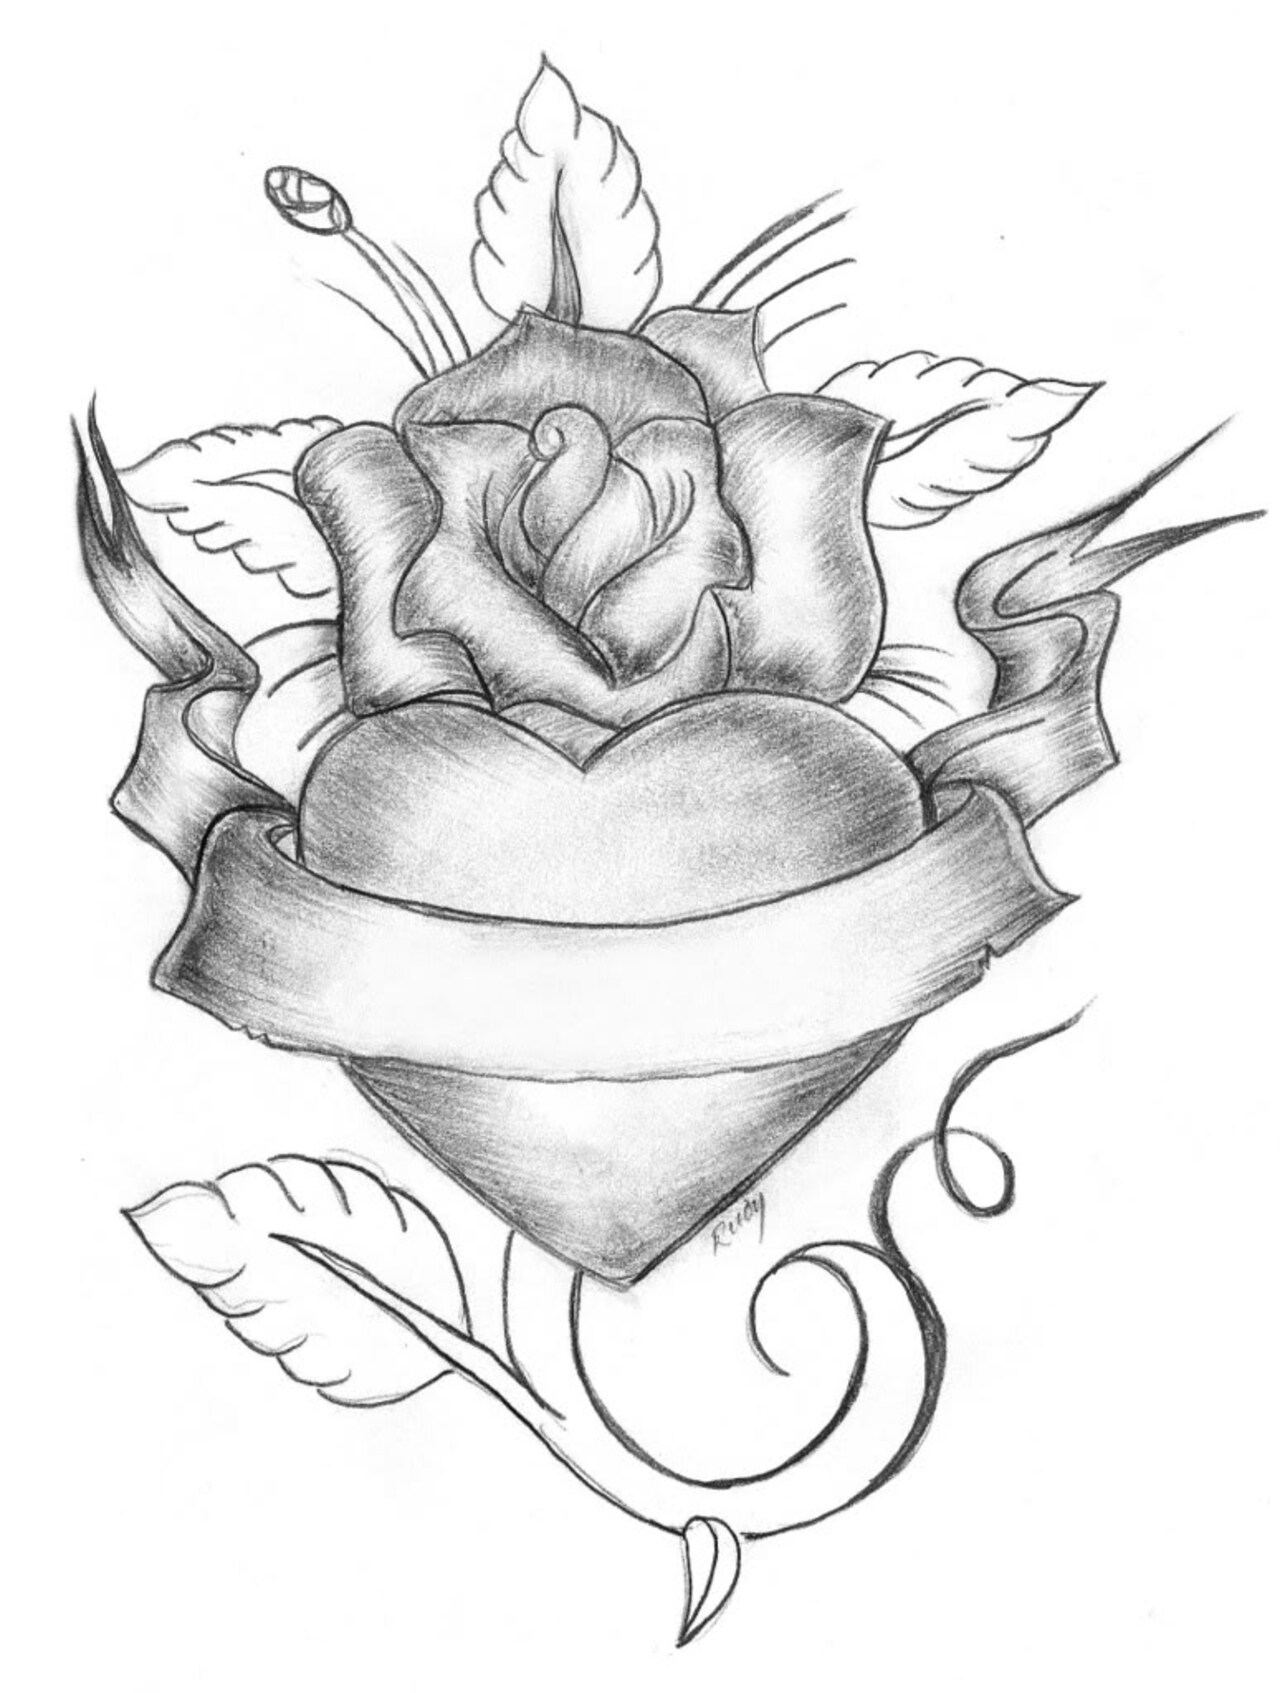 Tranh vẽ hoa hồng: Hoa hồng là biểu tượng của tình yêu và sự lãng mạn. Tận hưởng vẻ đẹp tuyệt vời của loài hoa này thông qua bức ảnh tuyệt đẹp với chủ đề \